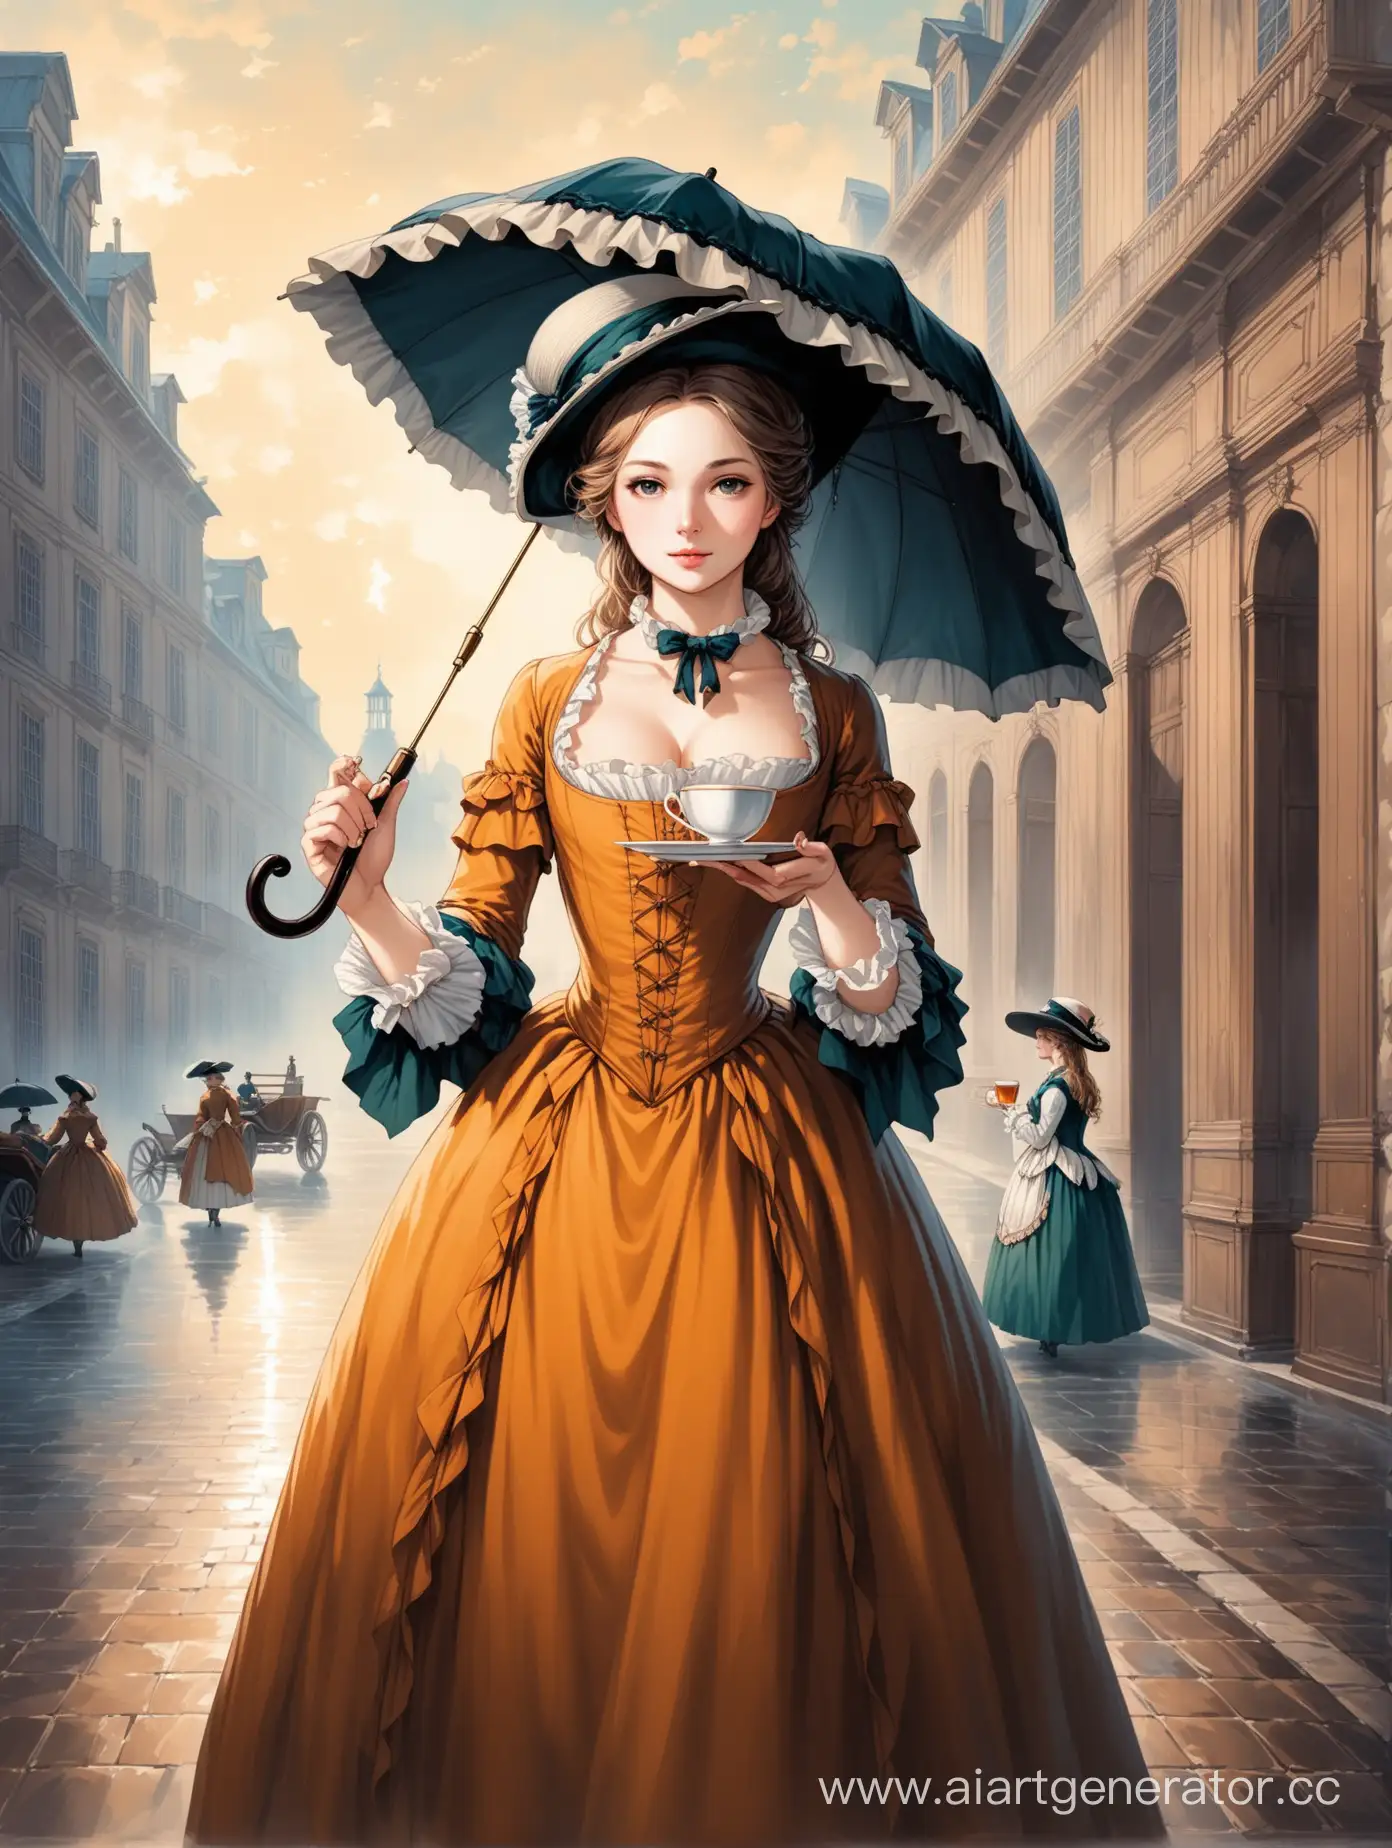 Таинственная девушка в платье и шляпе европейской моды 18 века, держит в одной руке чашечку чая, а в другой раскрытый зонт